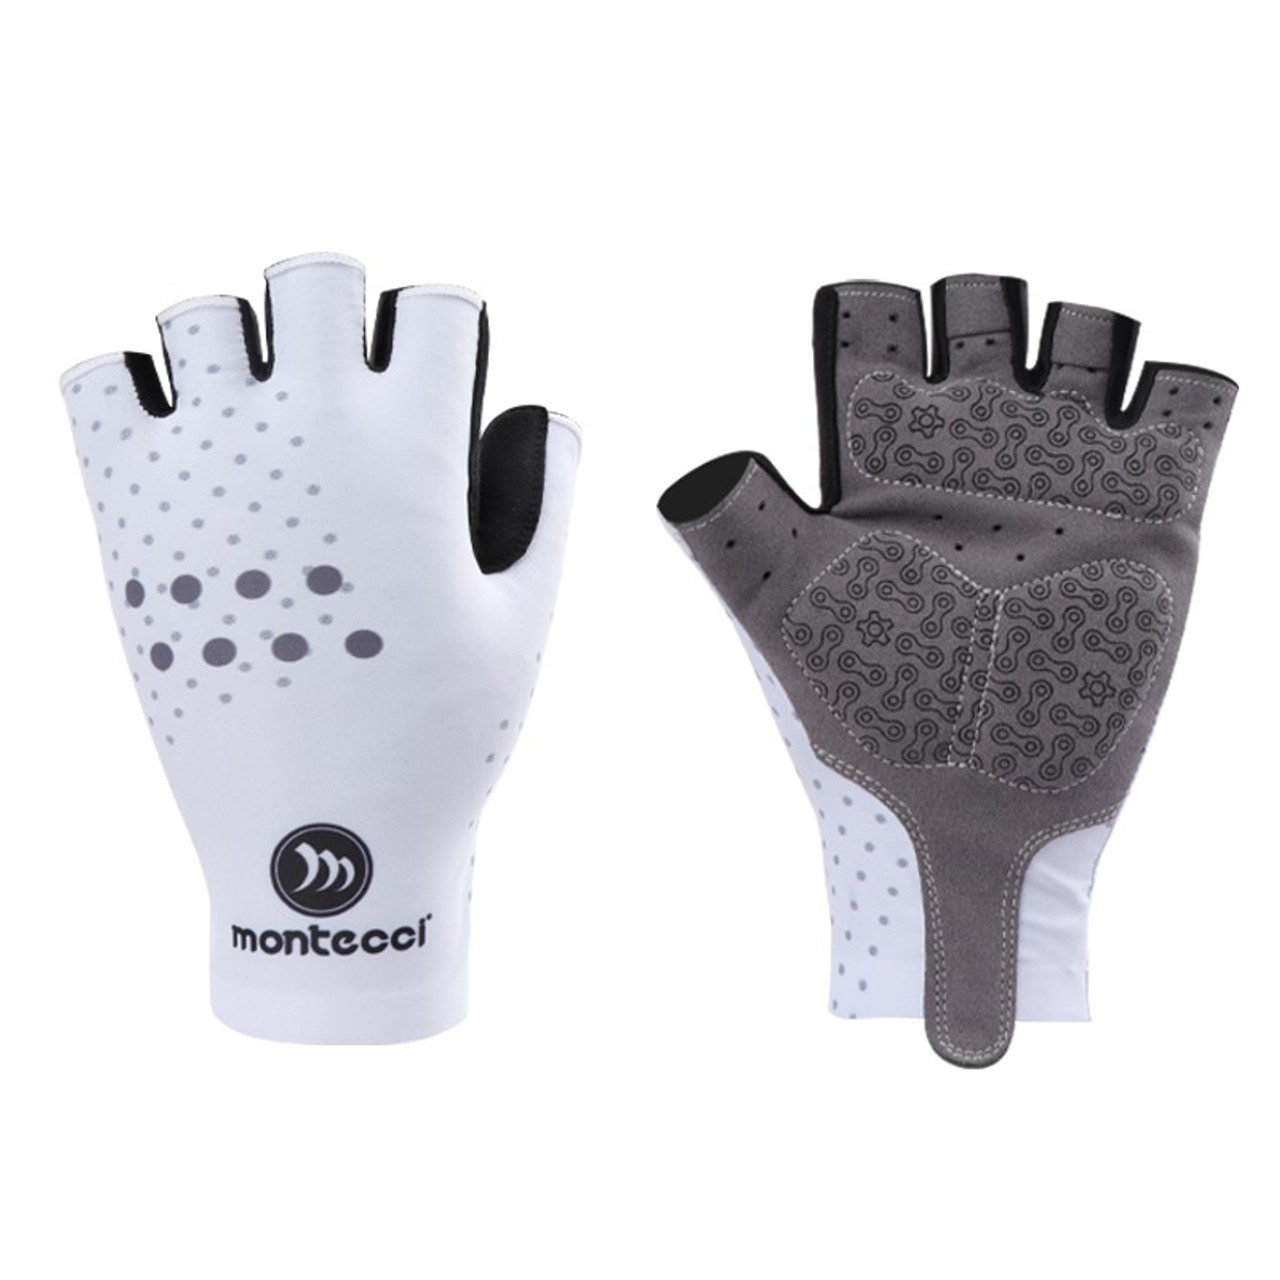 Montecci Aero Gloves